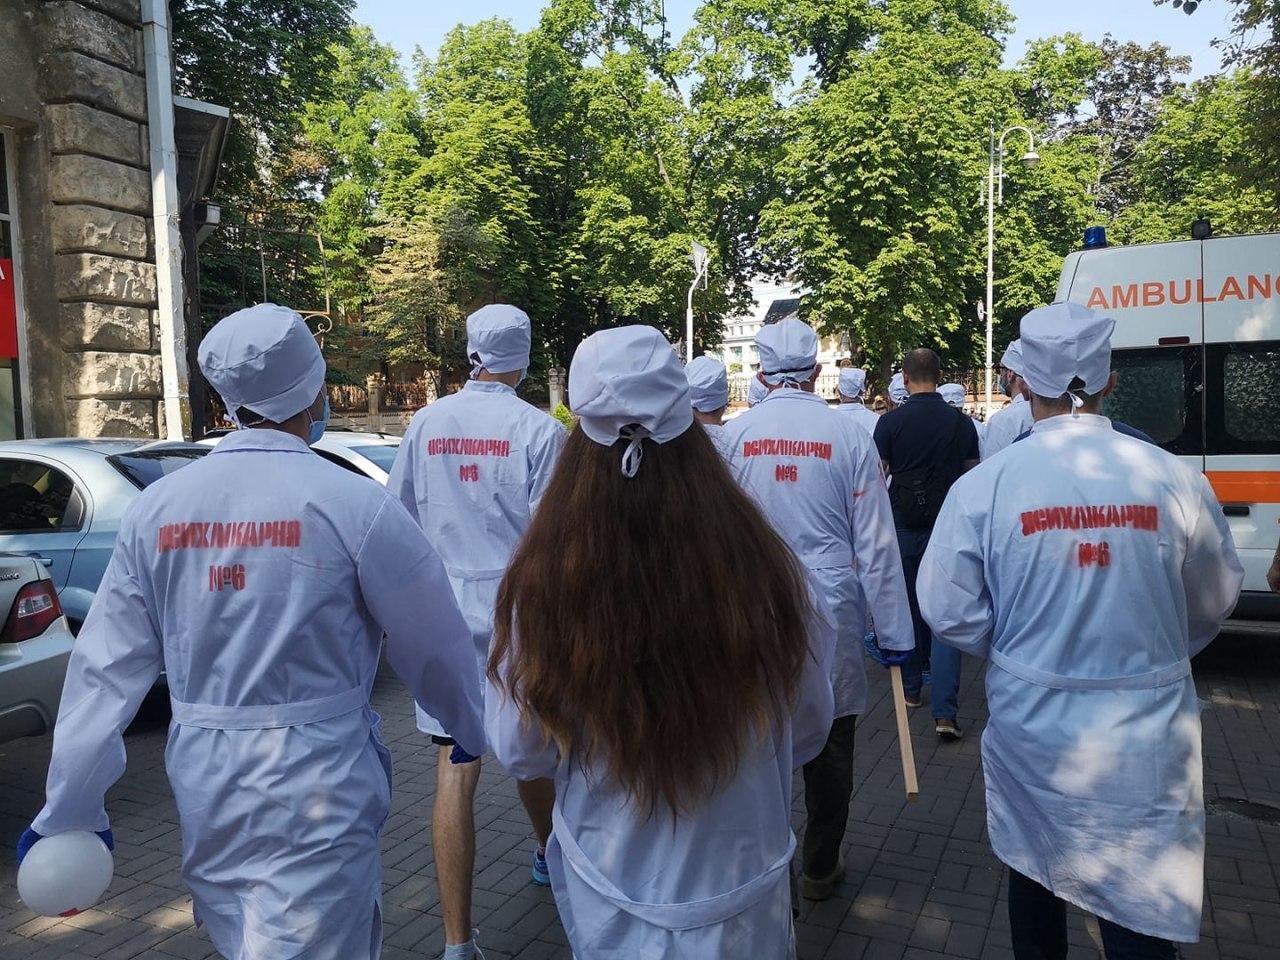 Участники акции "Киев не для Шария" оделись в белые халаты